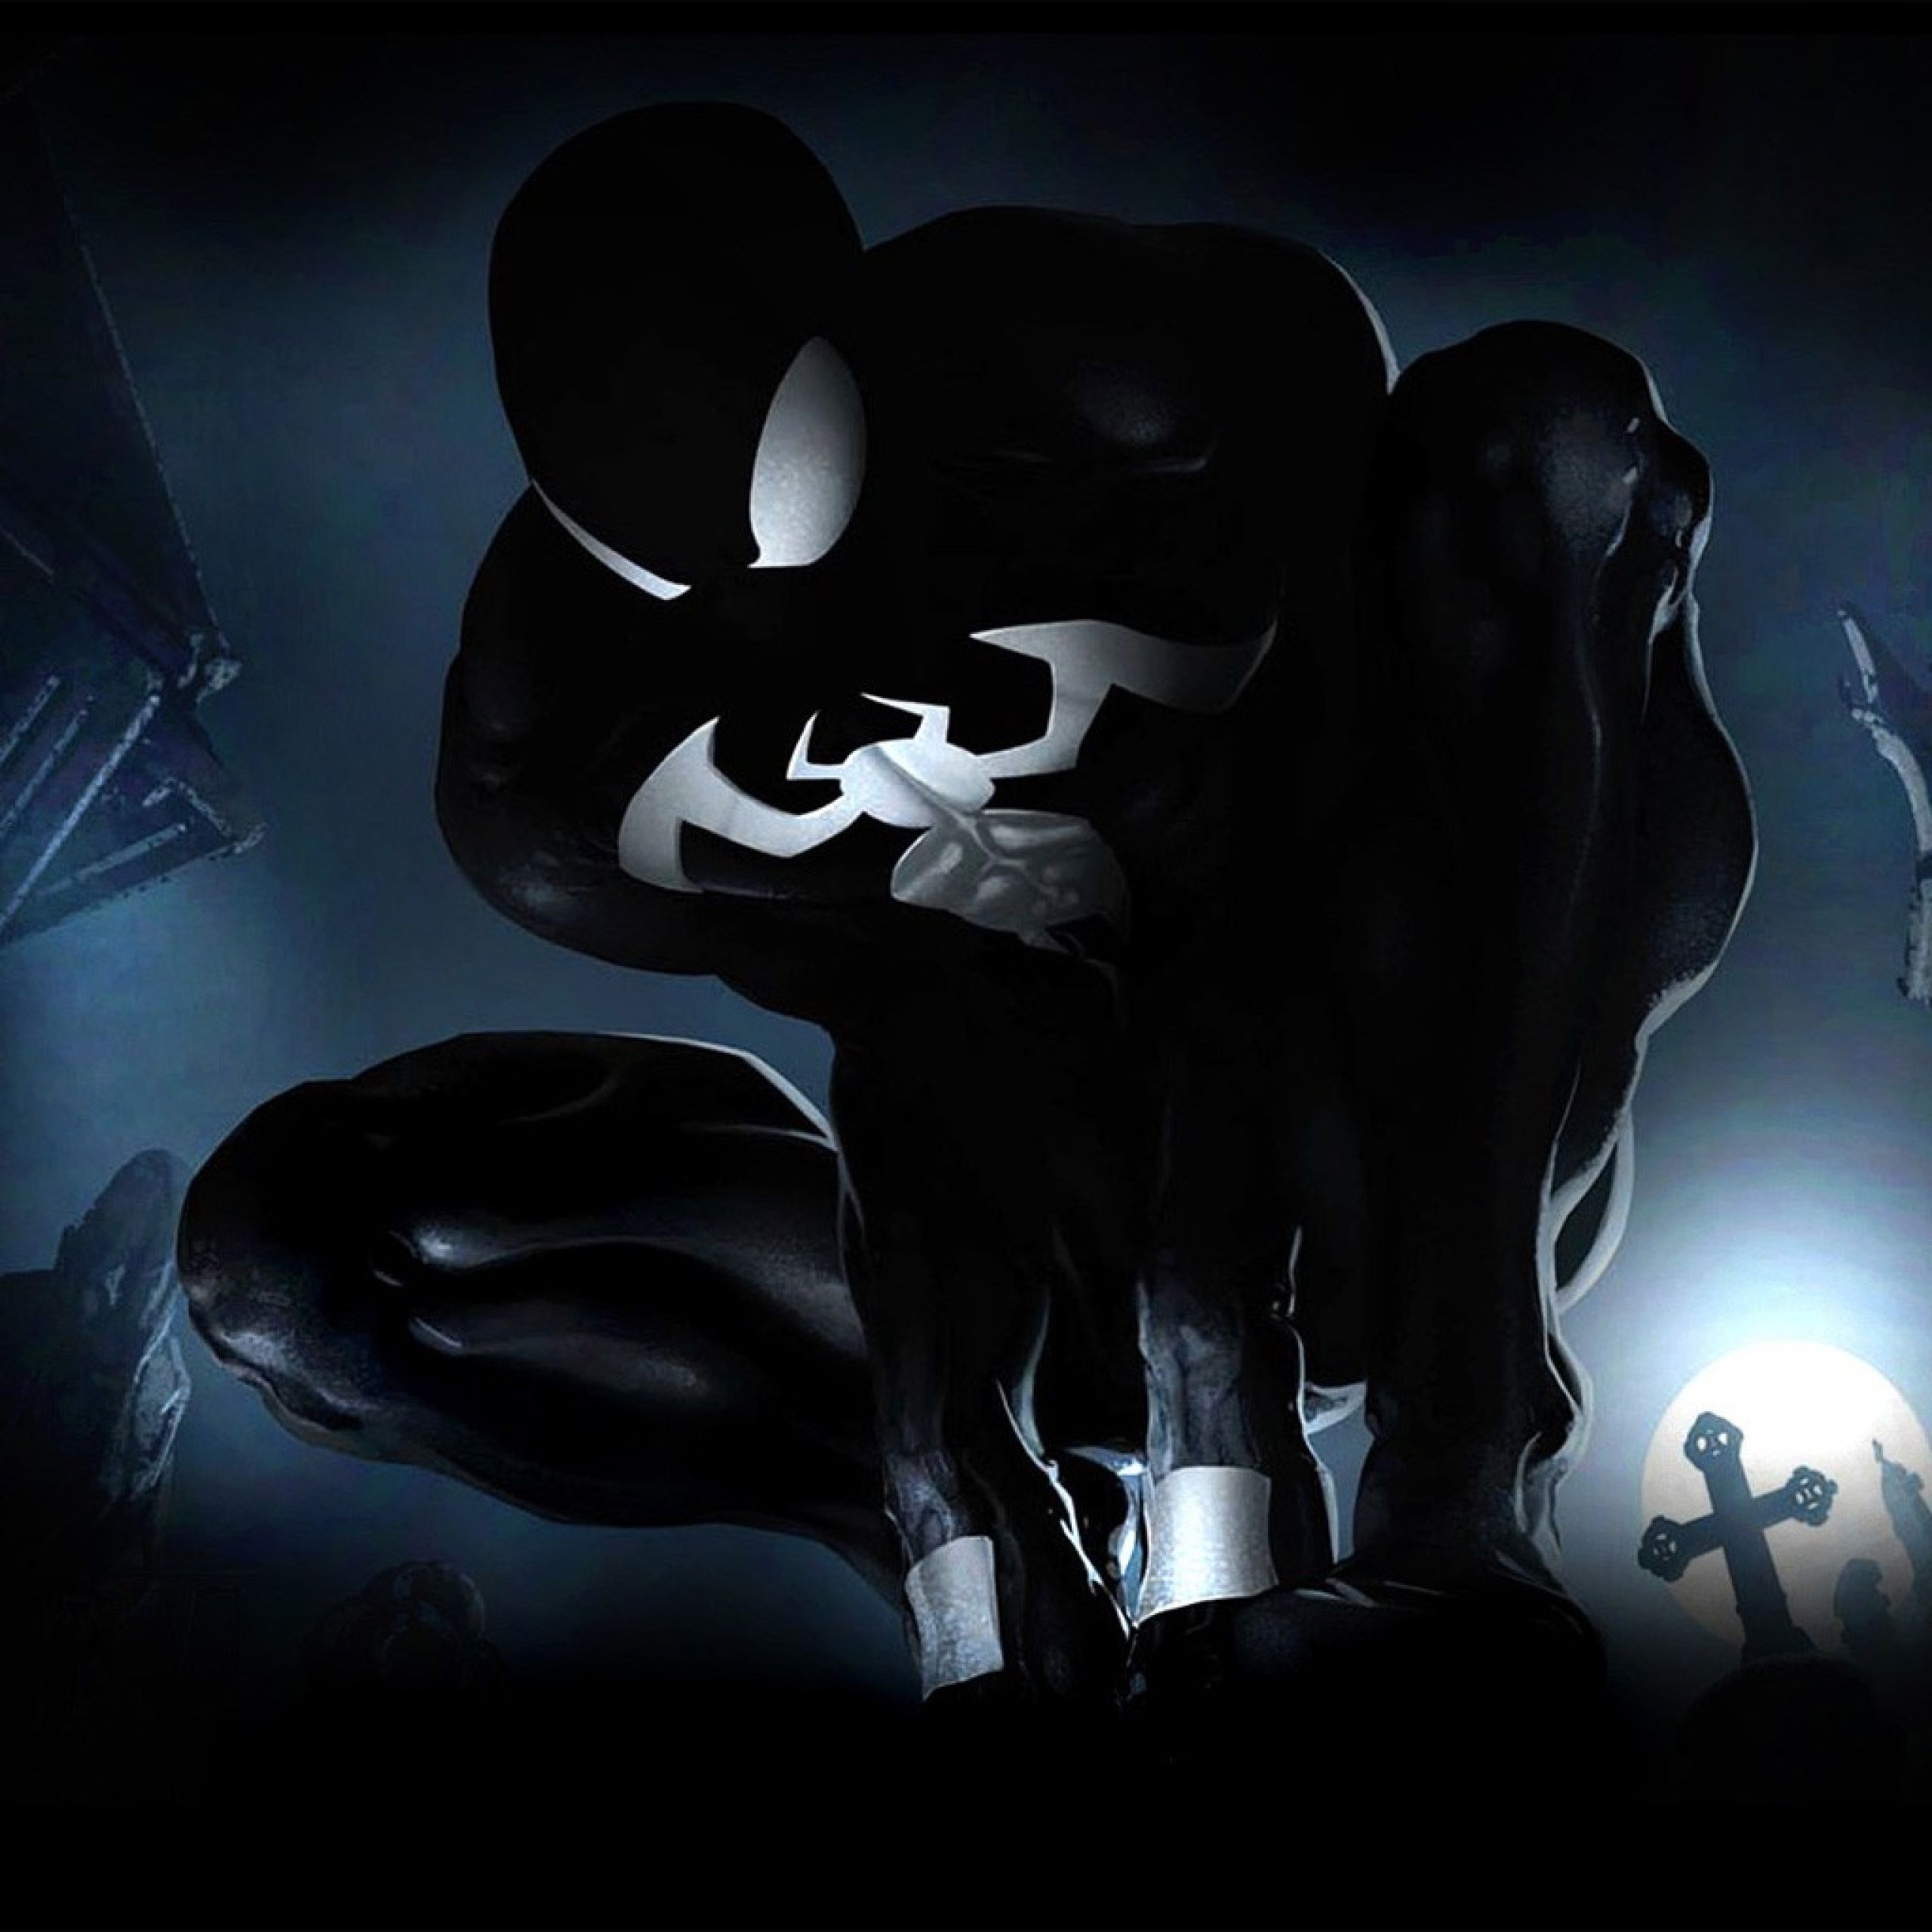 marvel venom wallpaper,oscuridad,personaje de ficción,en blanco y negro